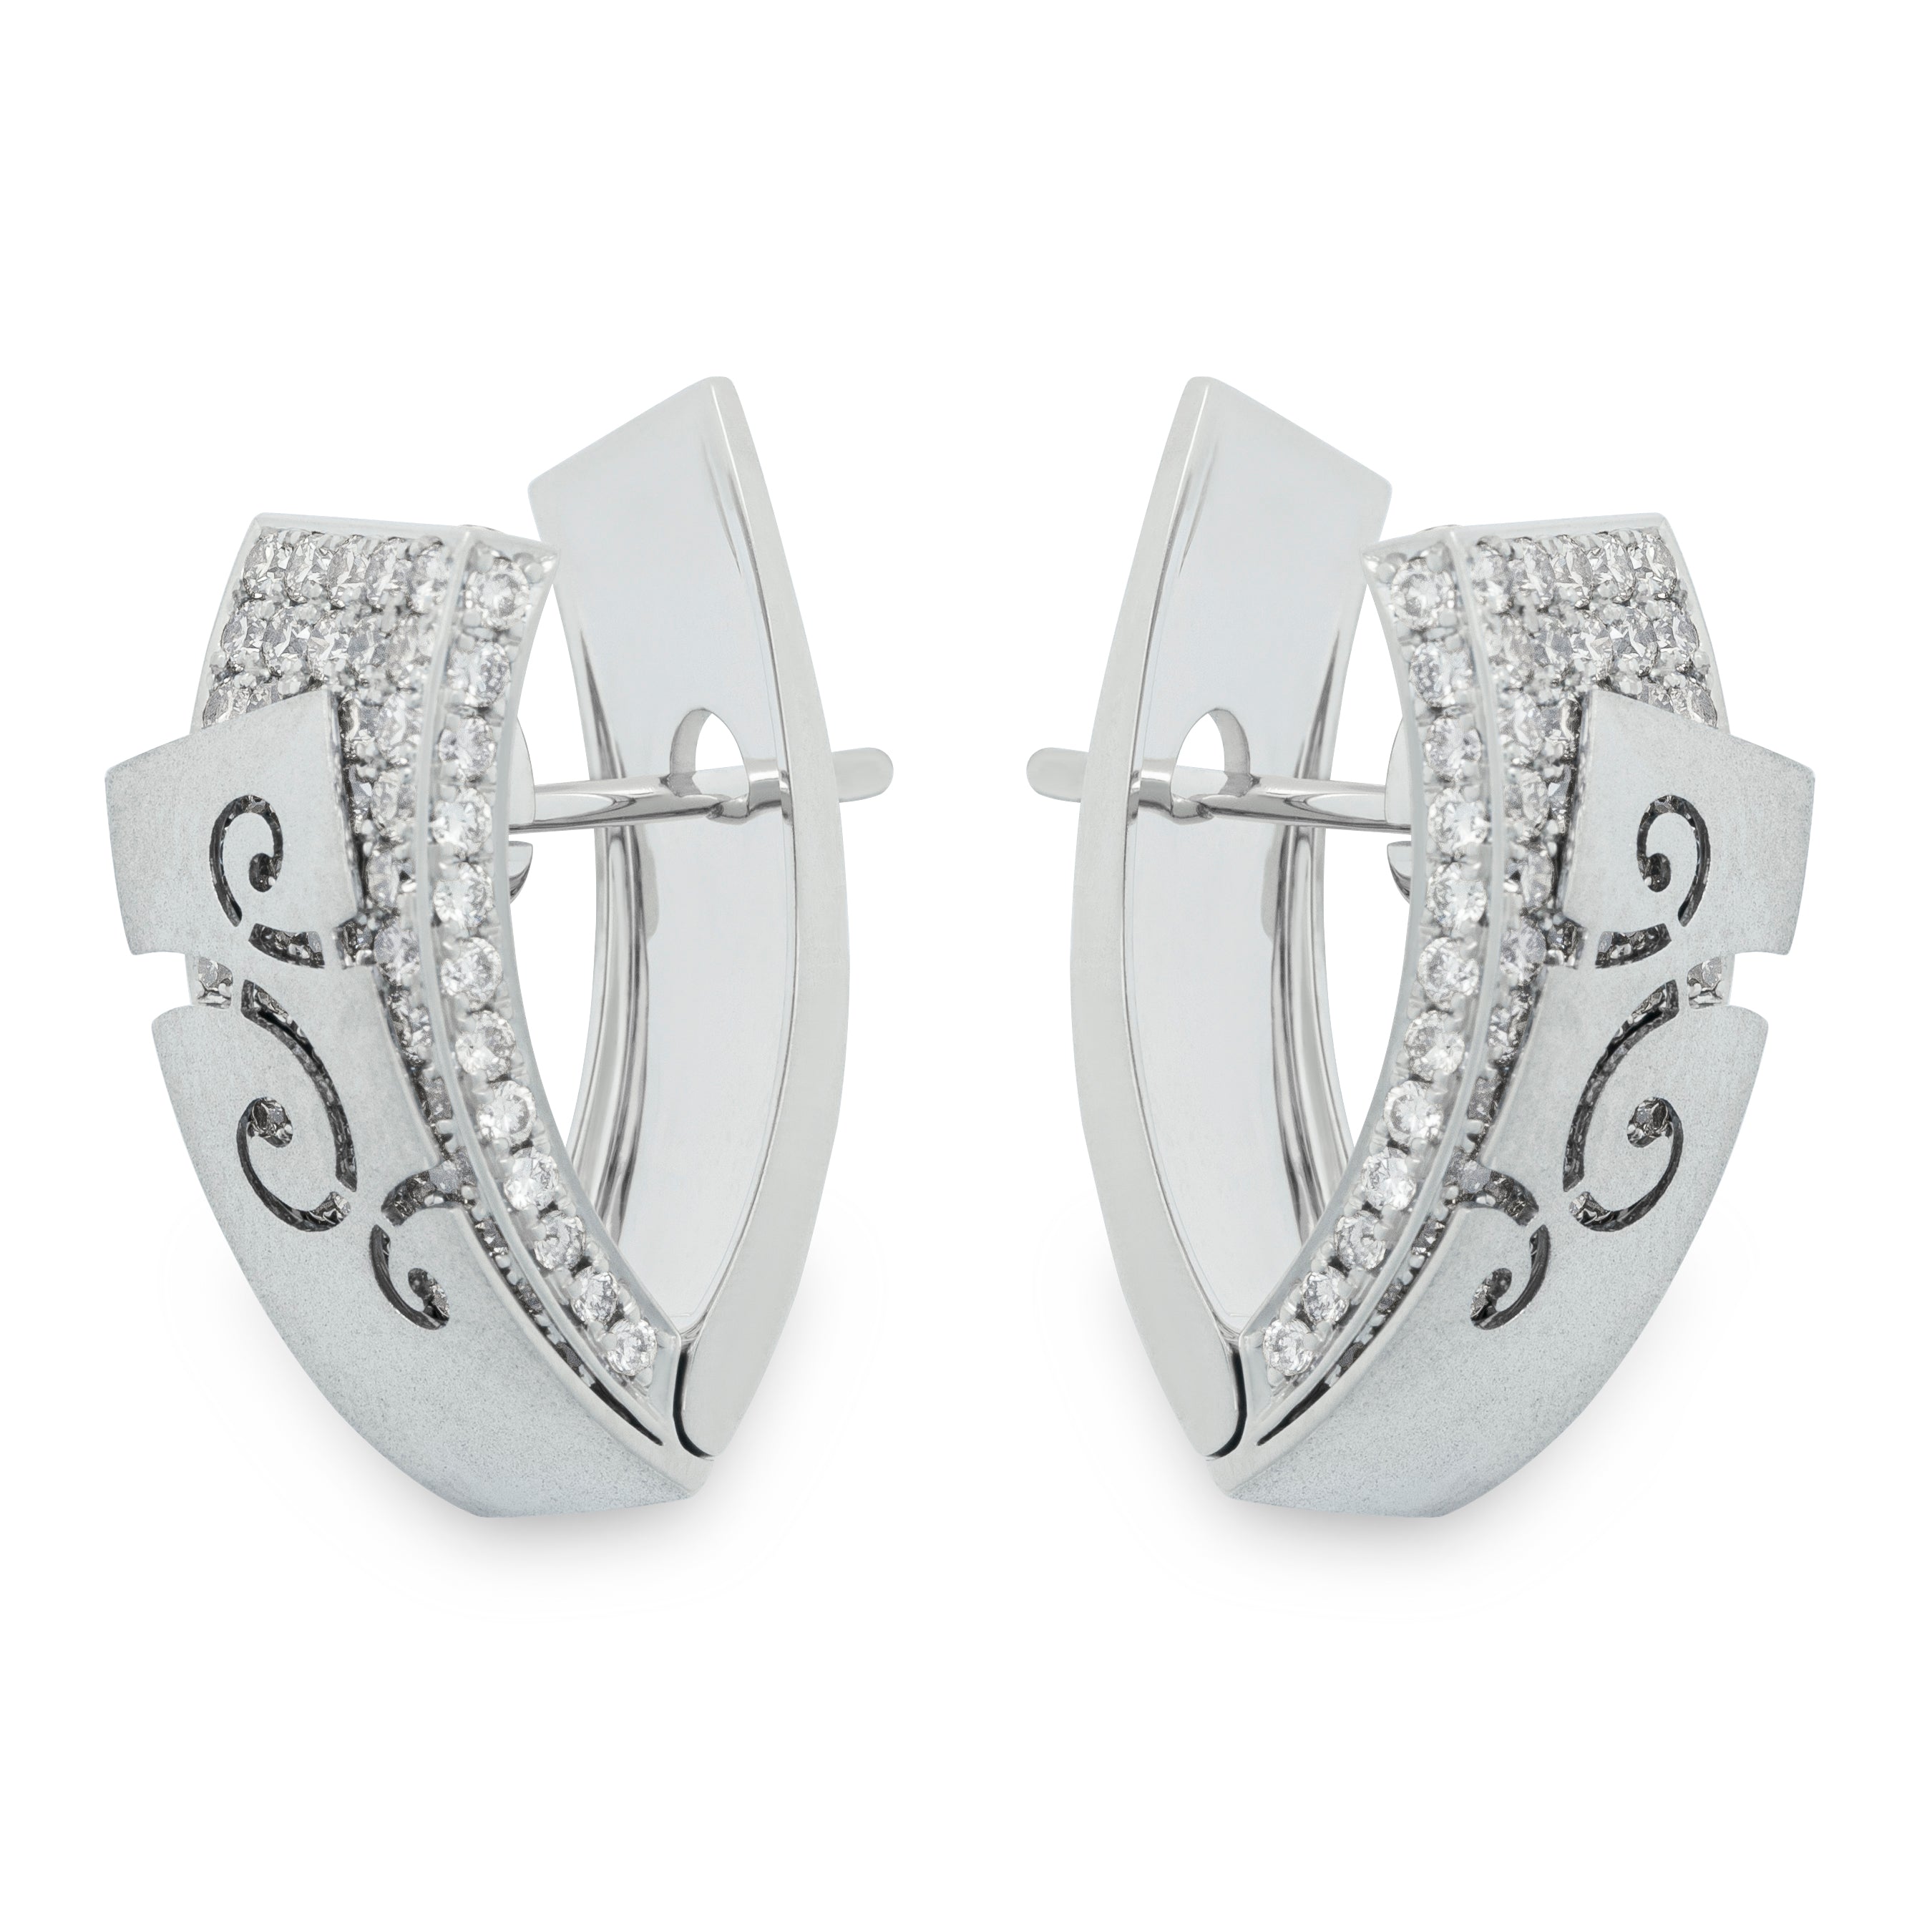 E 0003-3, 18K White Gold, Diamonds Earrings